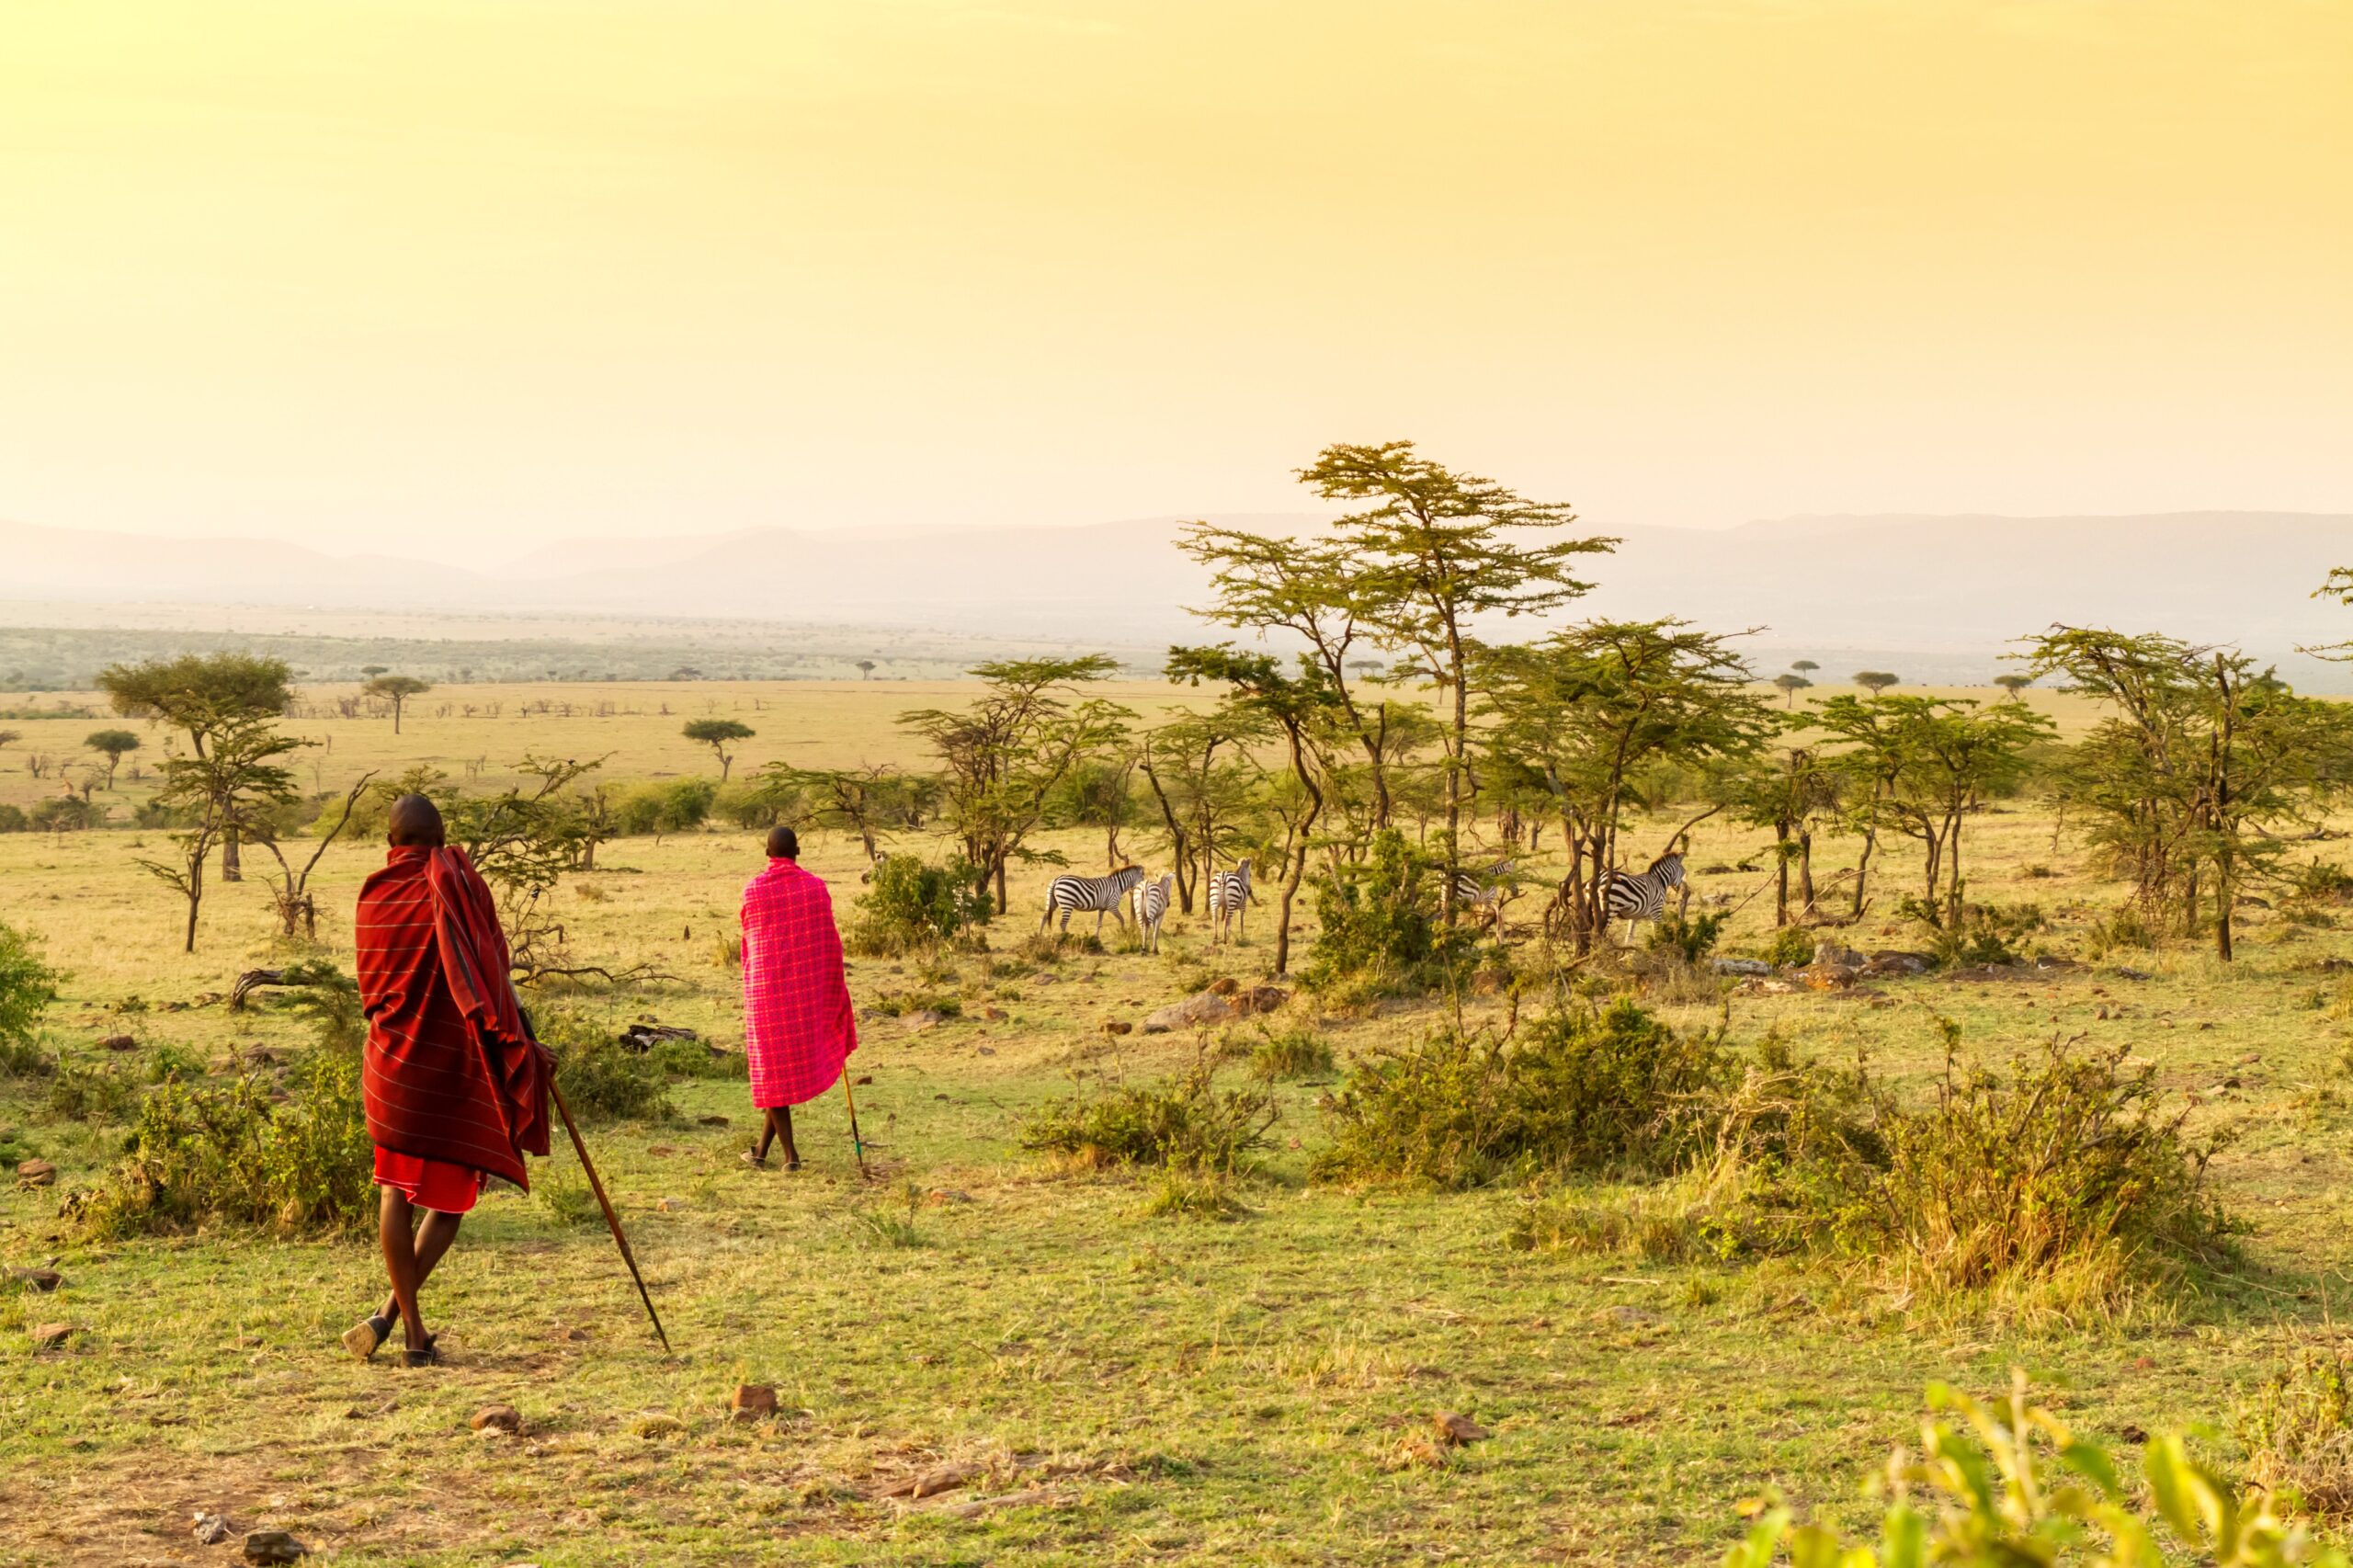 <img src="masai.jpg" alt="masai tribe in kenya savvanahs"/>